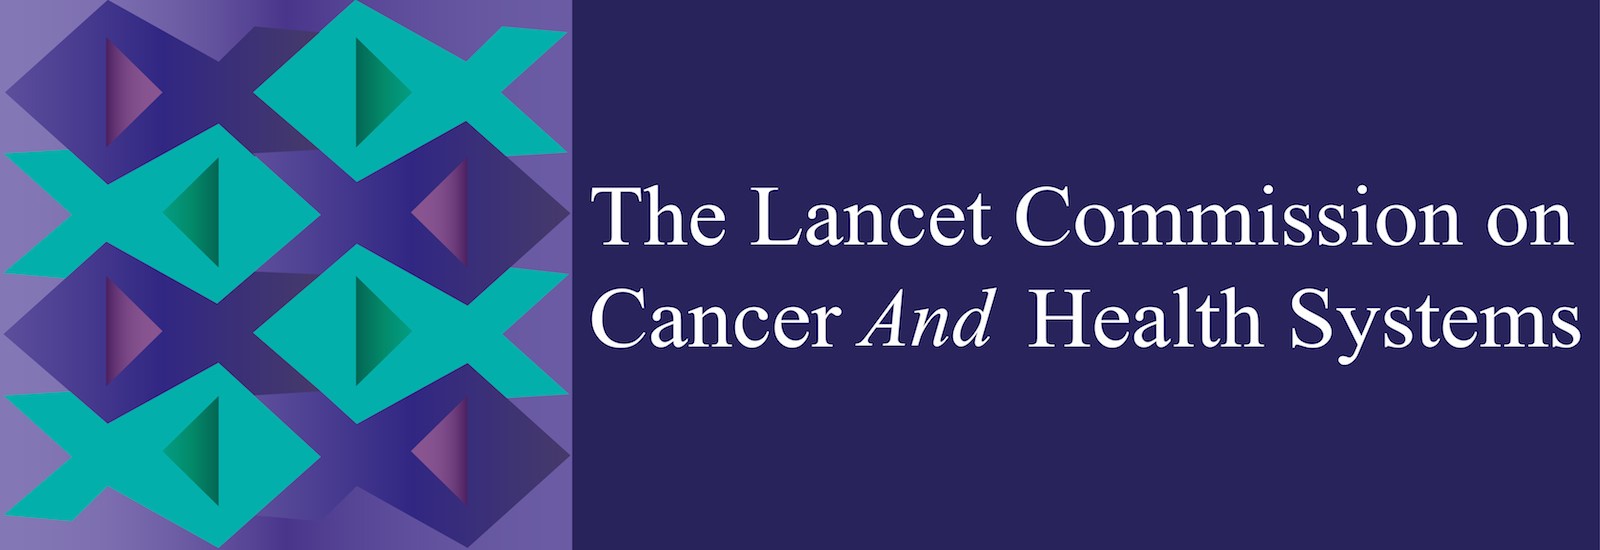 lancet commission on cancer